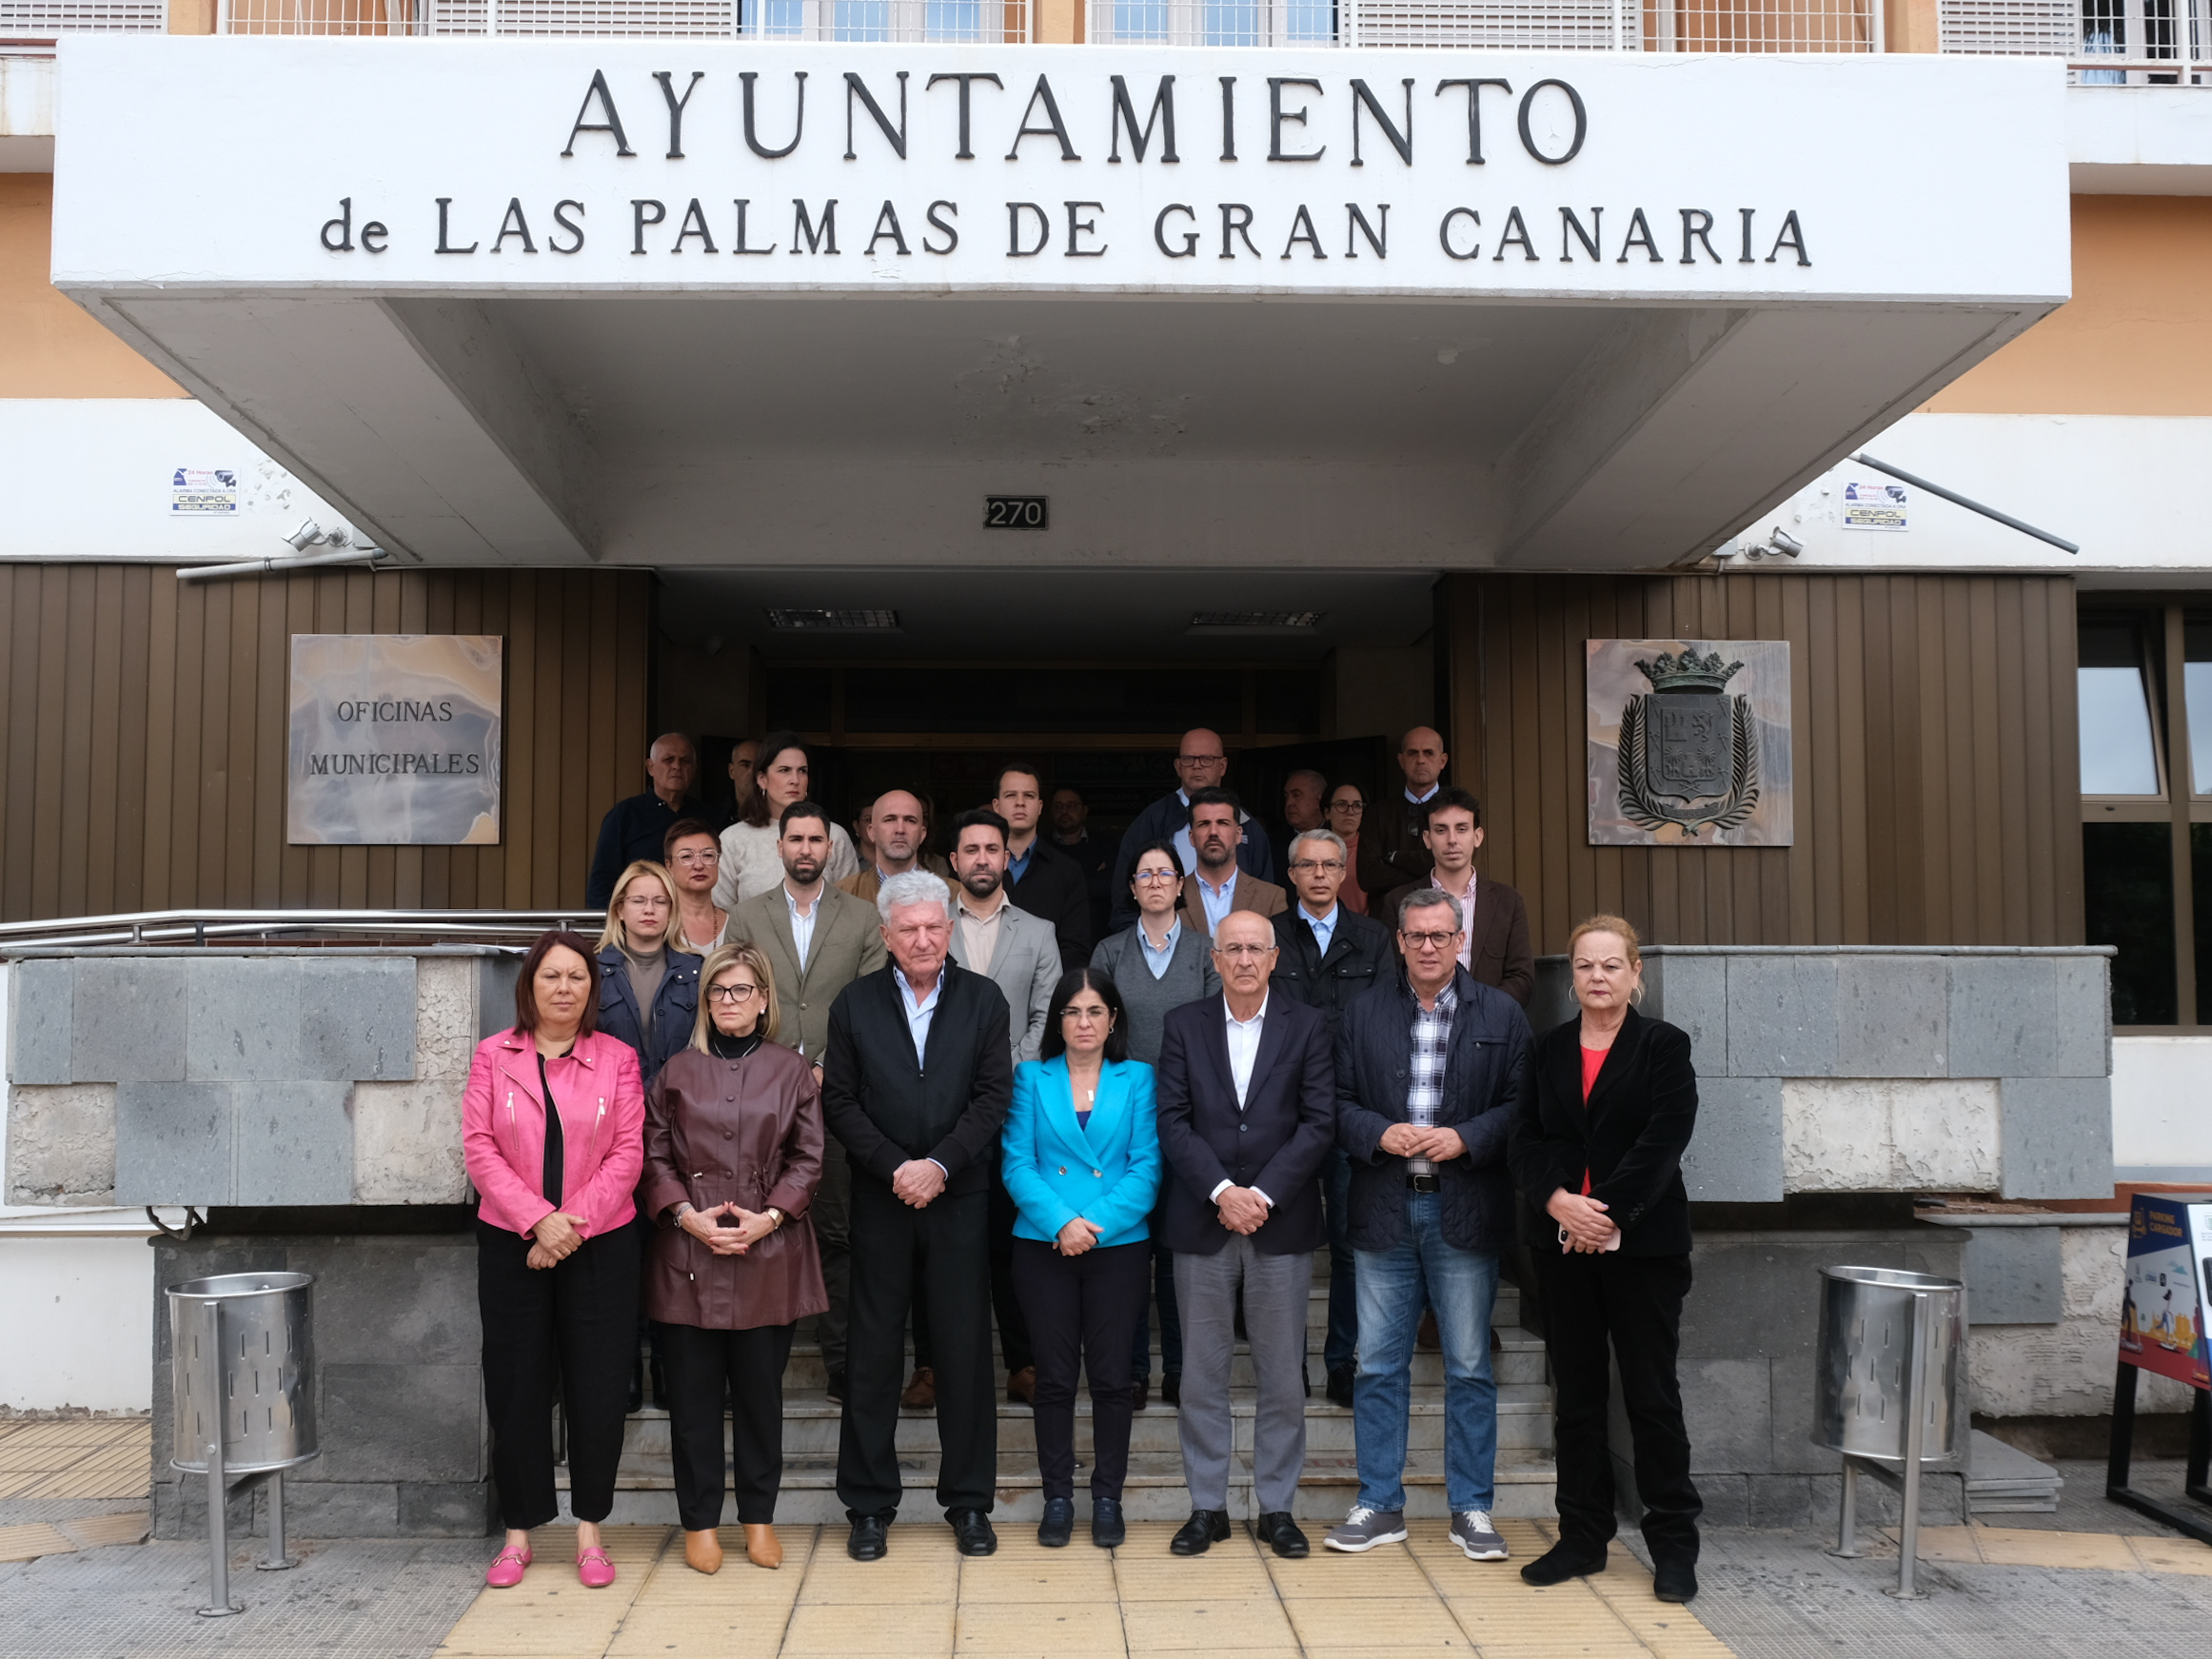 Minuto de silencio Ayuntamiento de Las Palmas de Gran Canaria